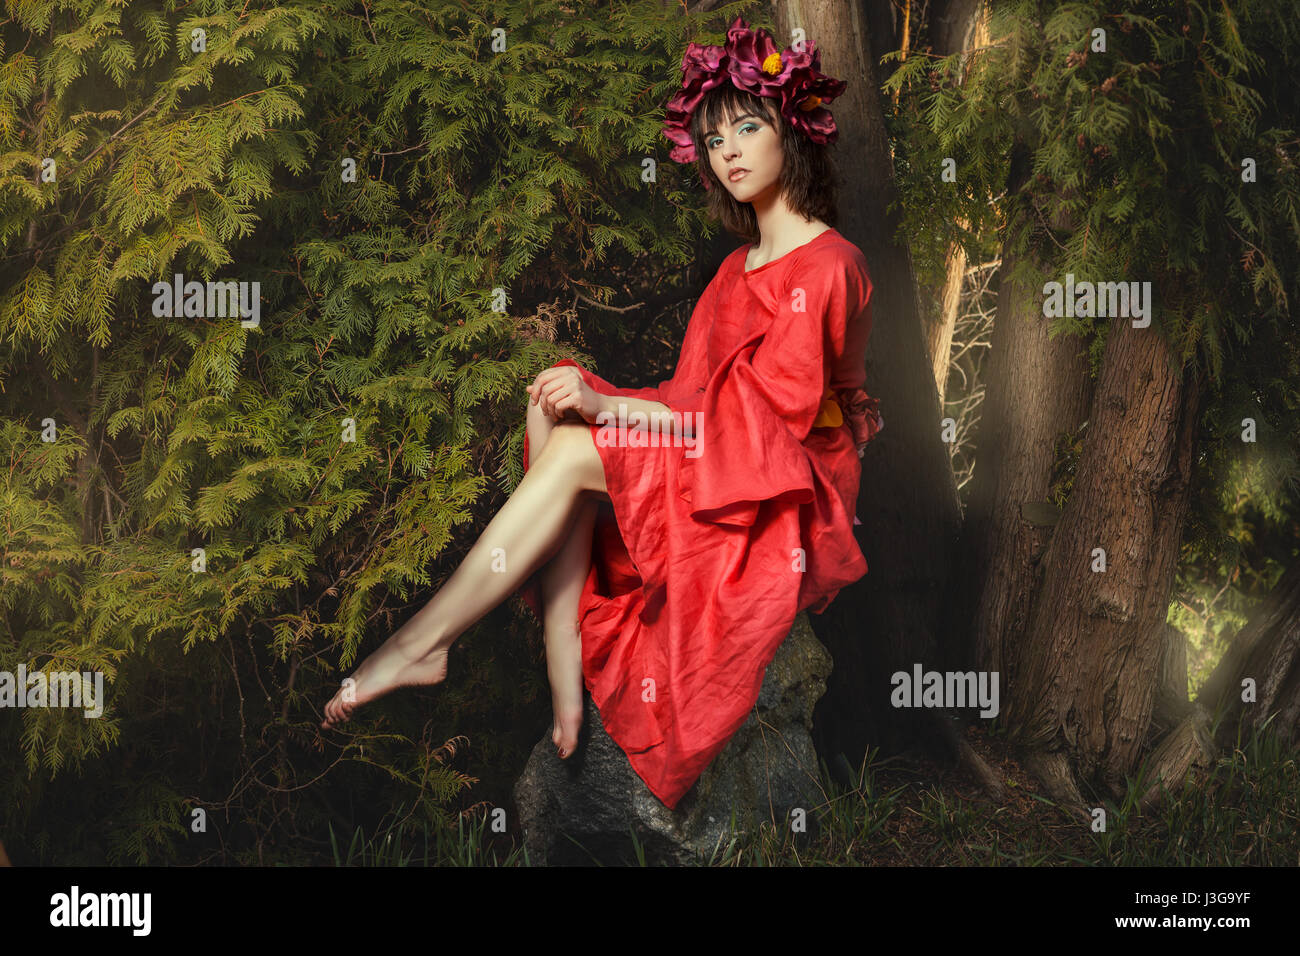 In der Waldfee auf ein Rock-Mädchen mit roten Kranz von Blumen auf dem Kopf sitzen. Stockfoto